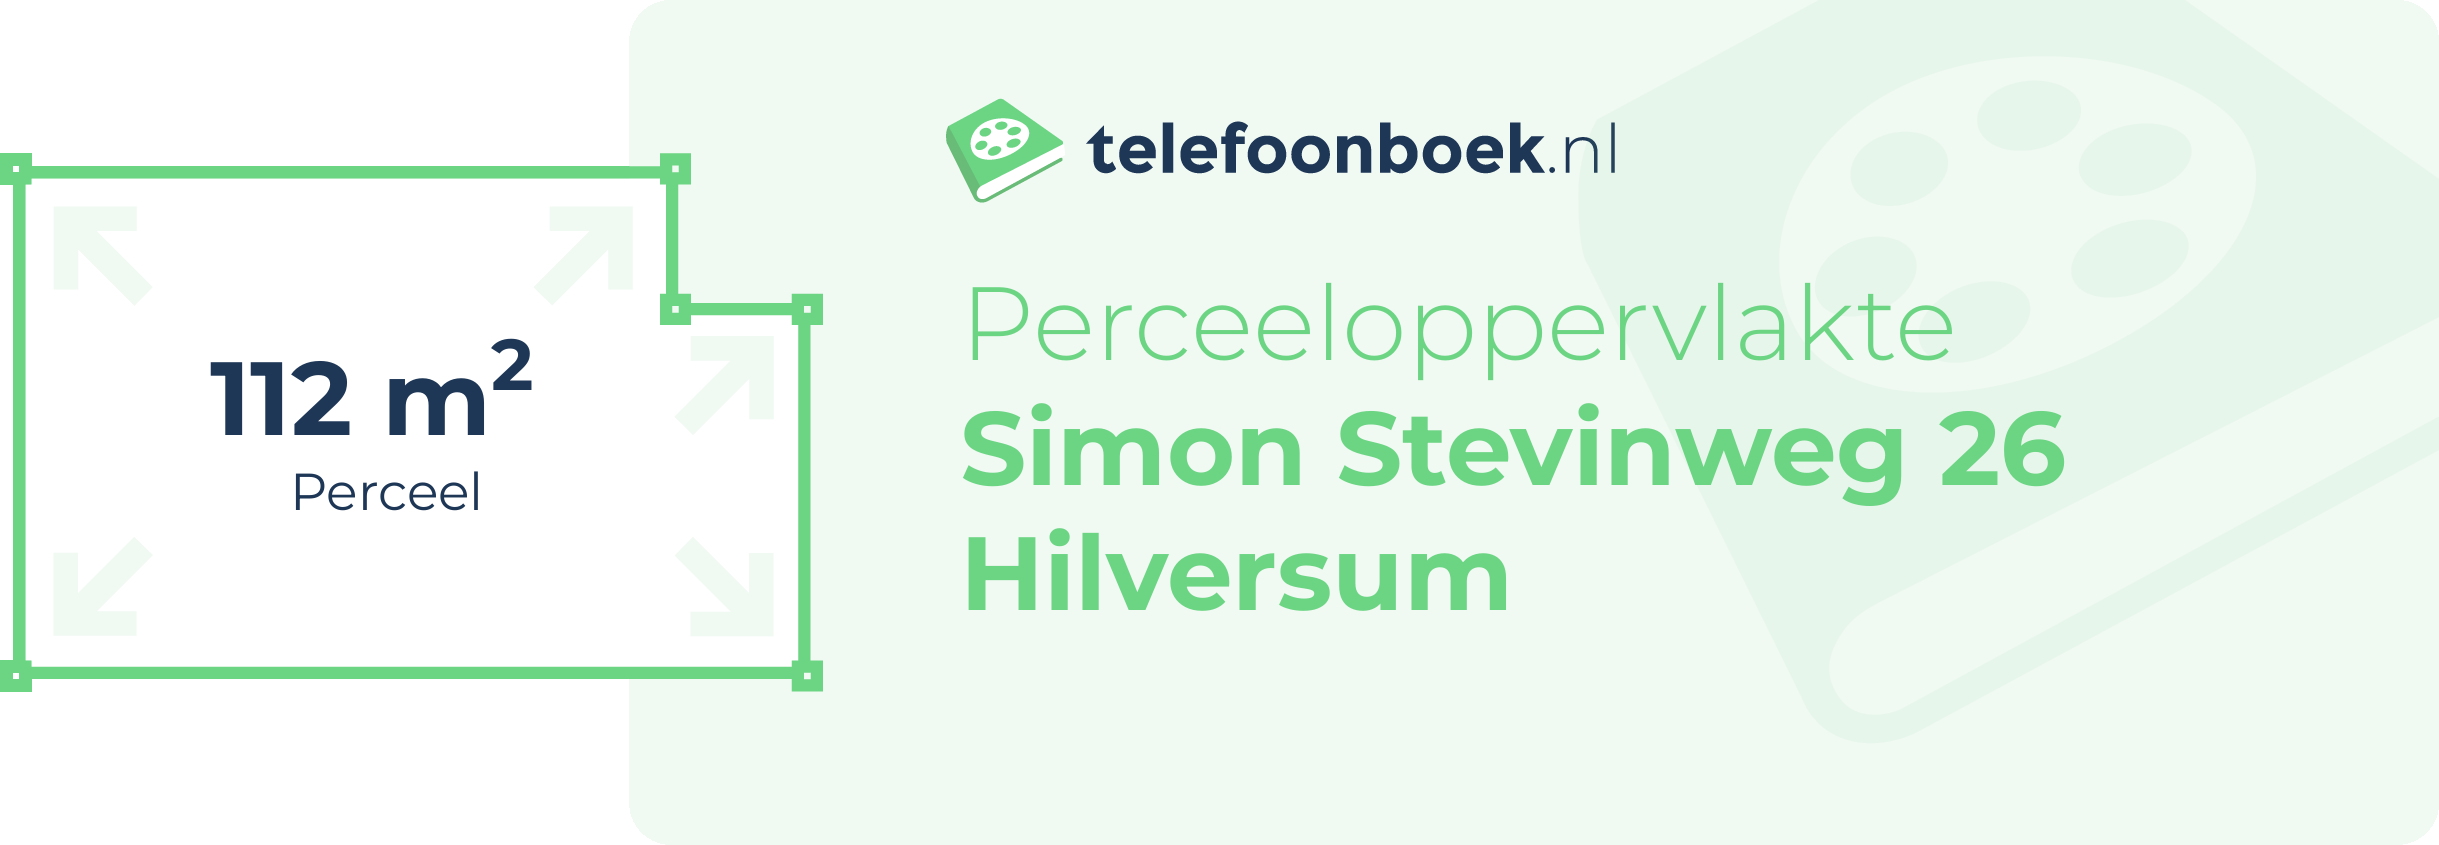 Perceeloppervlakte Simon Stevinweg 26 Hilversum